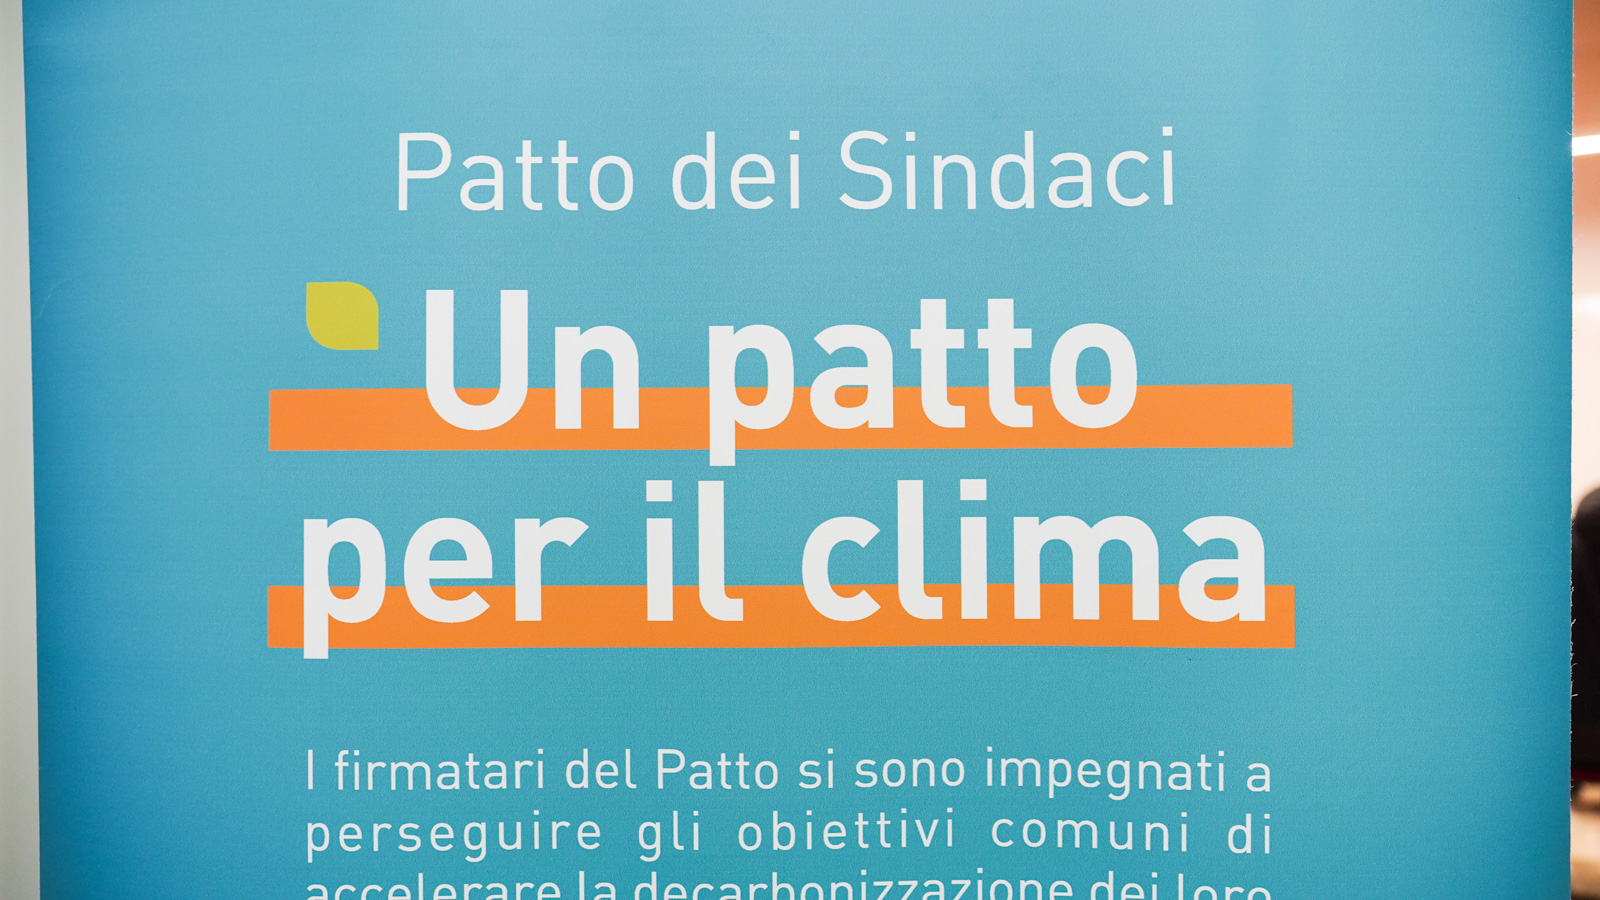 Galleria “Patto dei sindaci per il clima e l'energia”: la Regione Puglia e la regione francese della Loira insieme per contrastare i cambiamenti climatici - Diapositiva 3 di 9